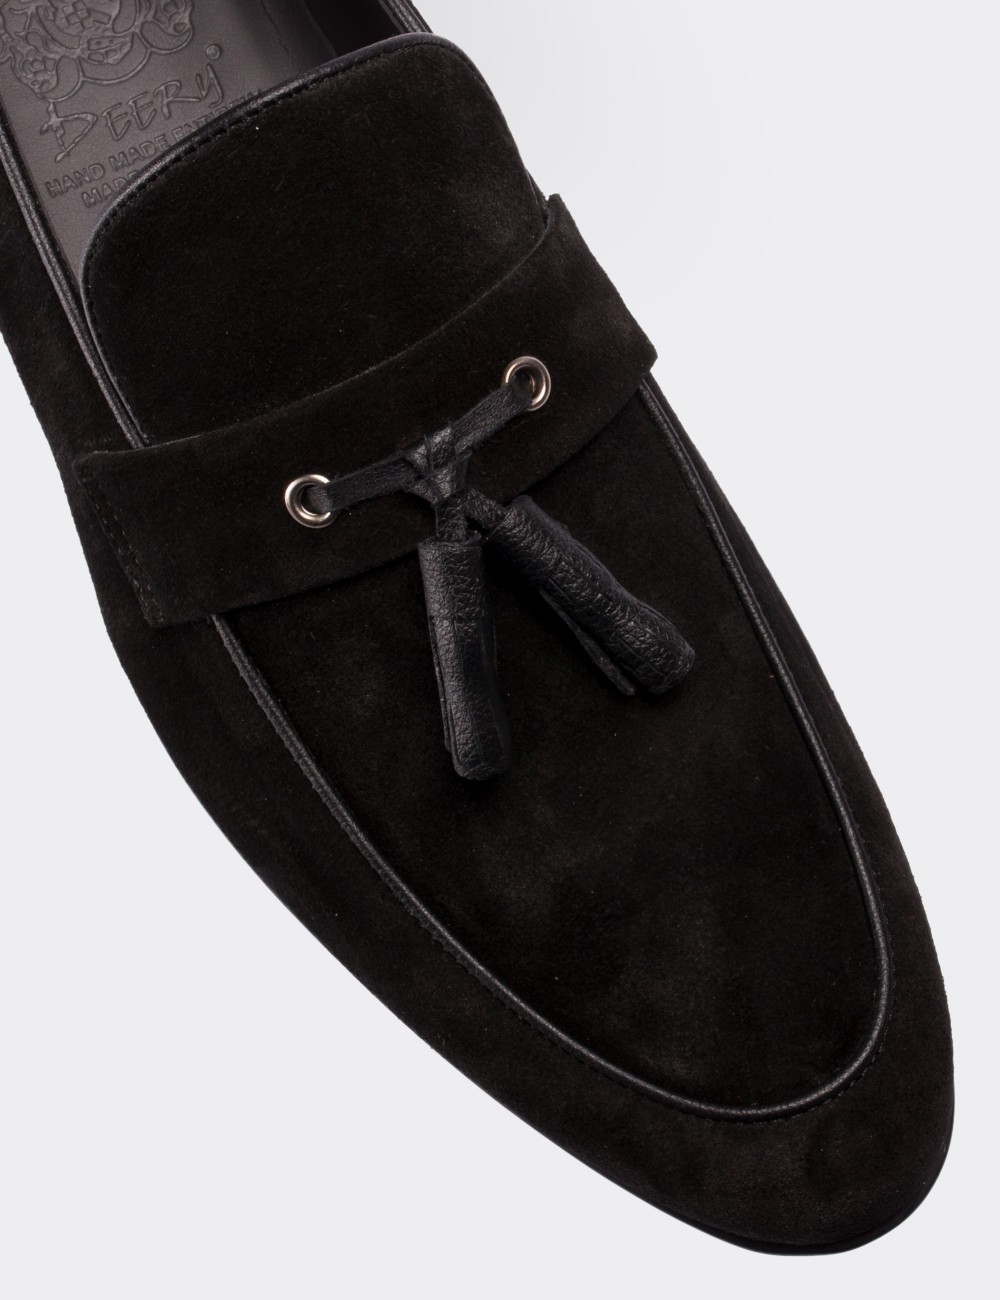 Hakiki Süet Siyah Loafer Erkek Ayakkabı - 01537MSYHC02